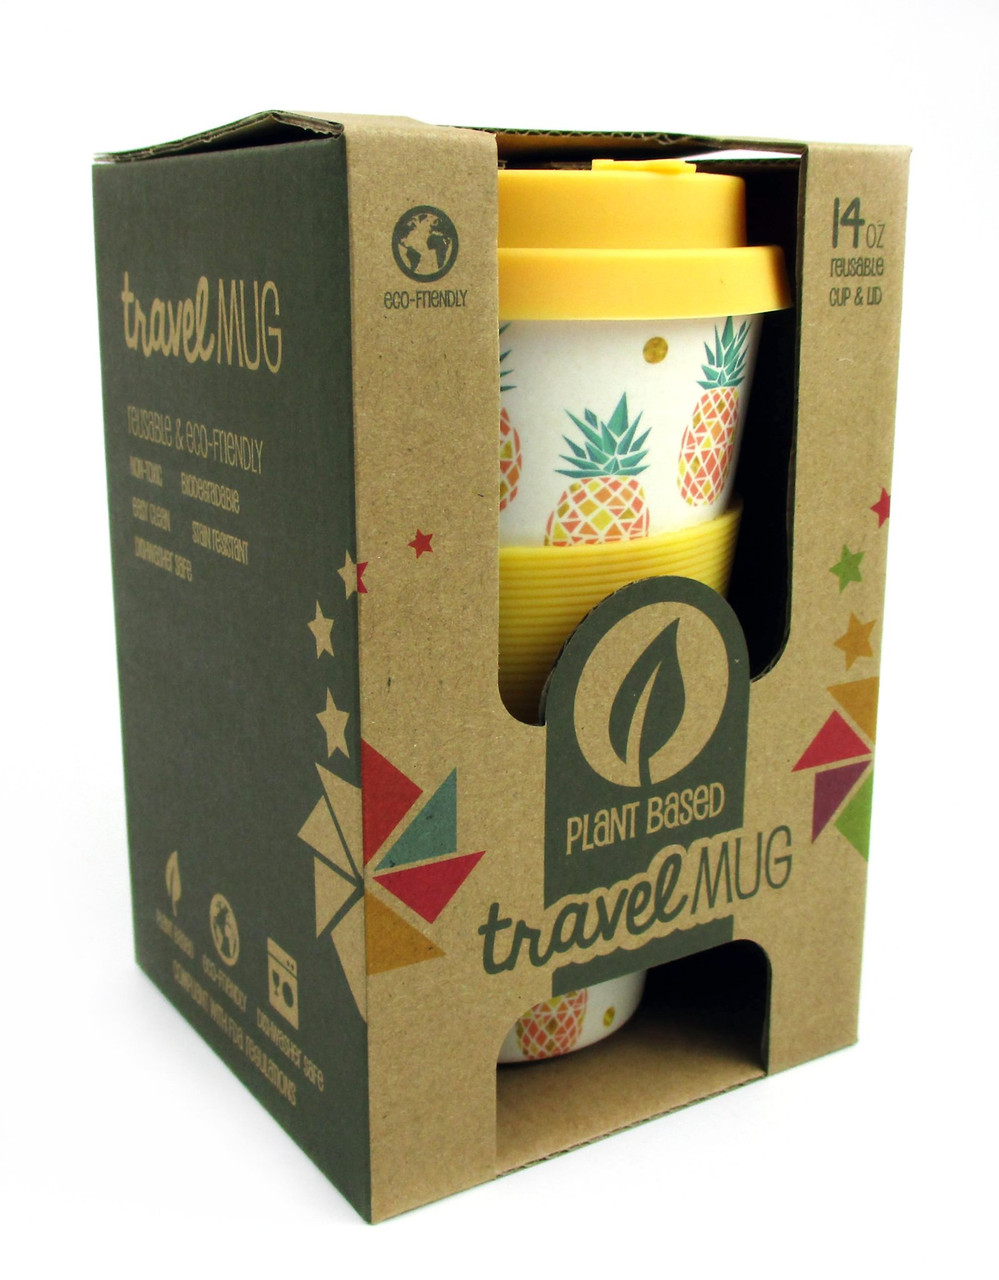 Christmas Cookies Holiday 14oz Travel Mug - Eco-Friendly Reusable Plant Fiber Travel Mug